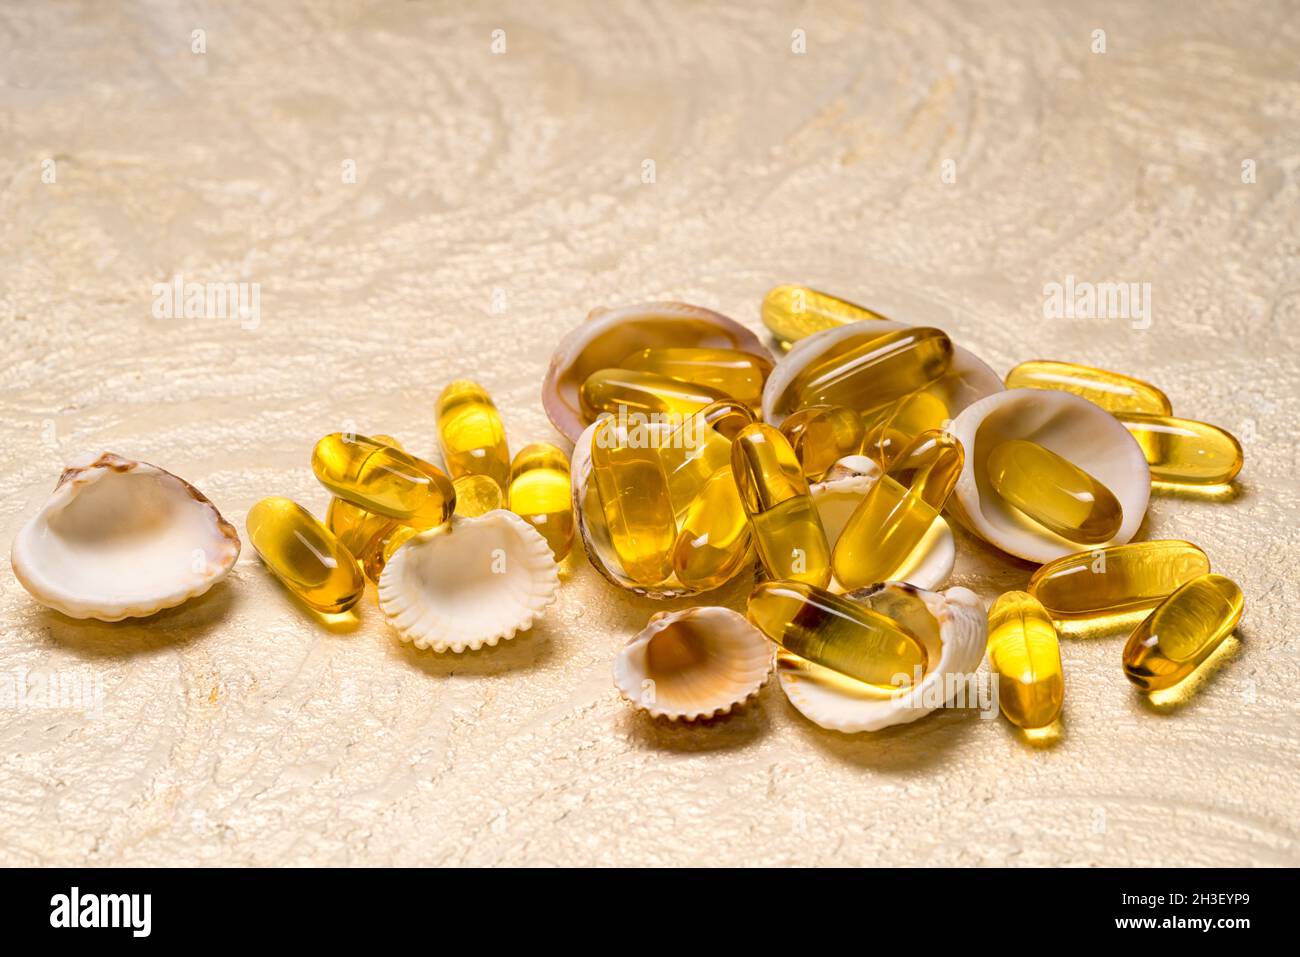 El montón de cápsulas de aceite de grasa de pescado Omega-3 se encuentra en las pequeñas conchas como un tesoro. Espacio de copia para el texto. EPA y DHA son sustancias grasas esenciales que tú Foto de stock